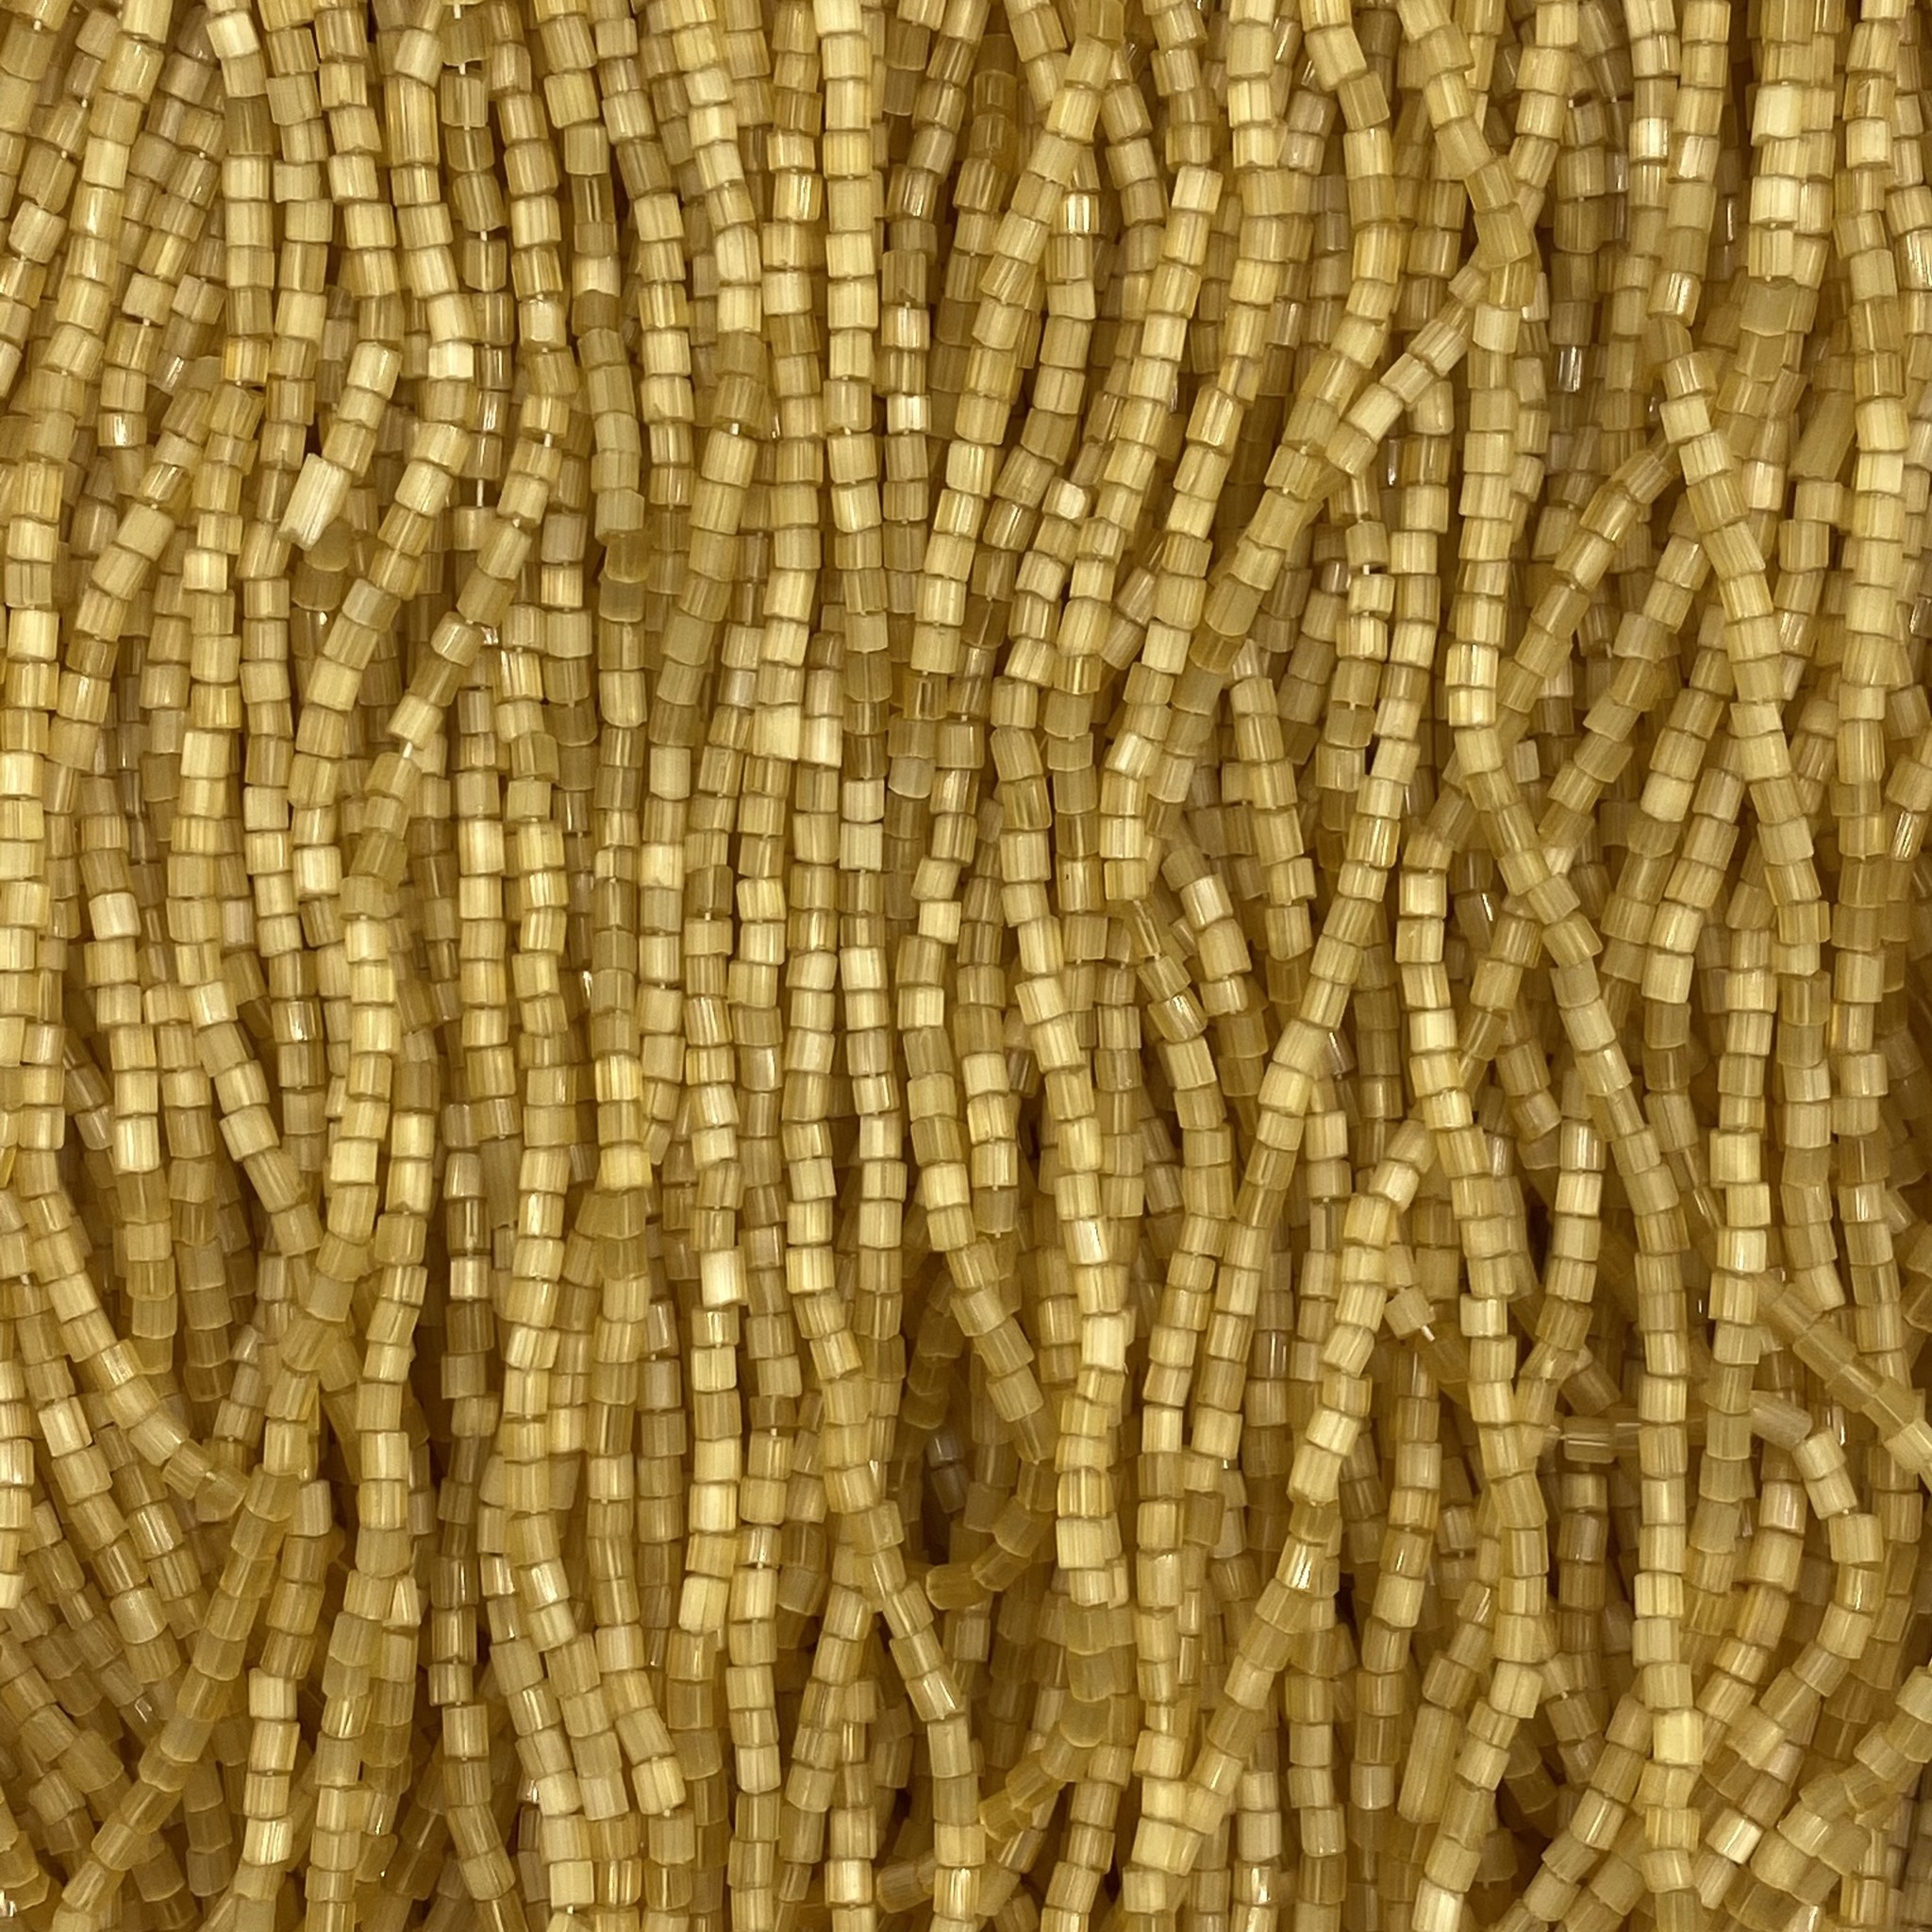 Seed Beads 11/0 Czech Metallic Gold (one Hank Pack)